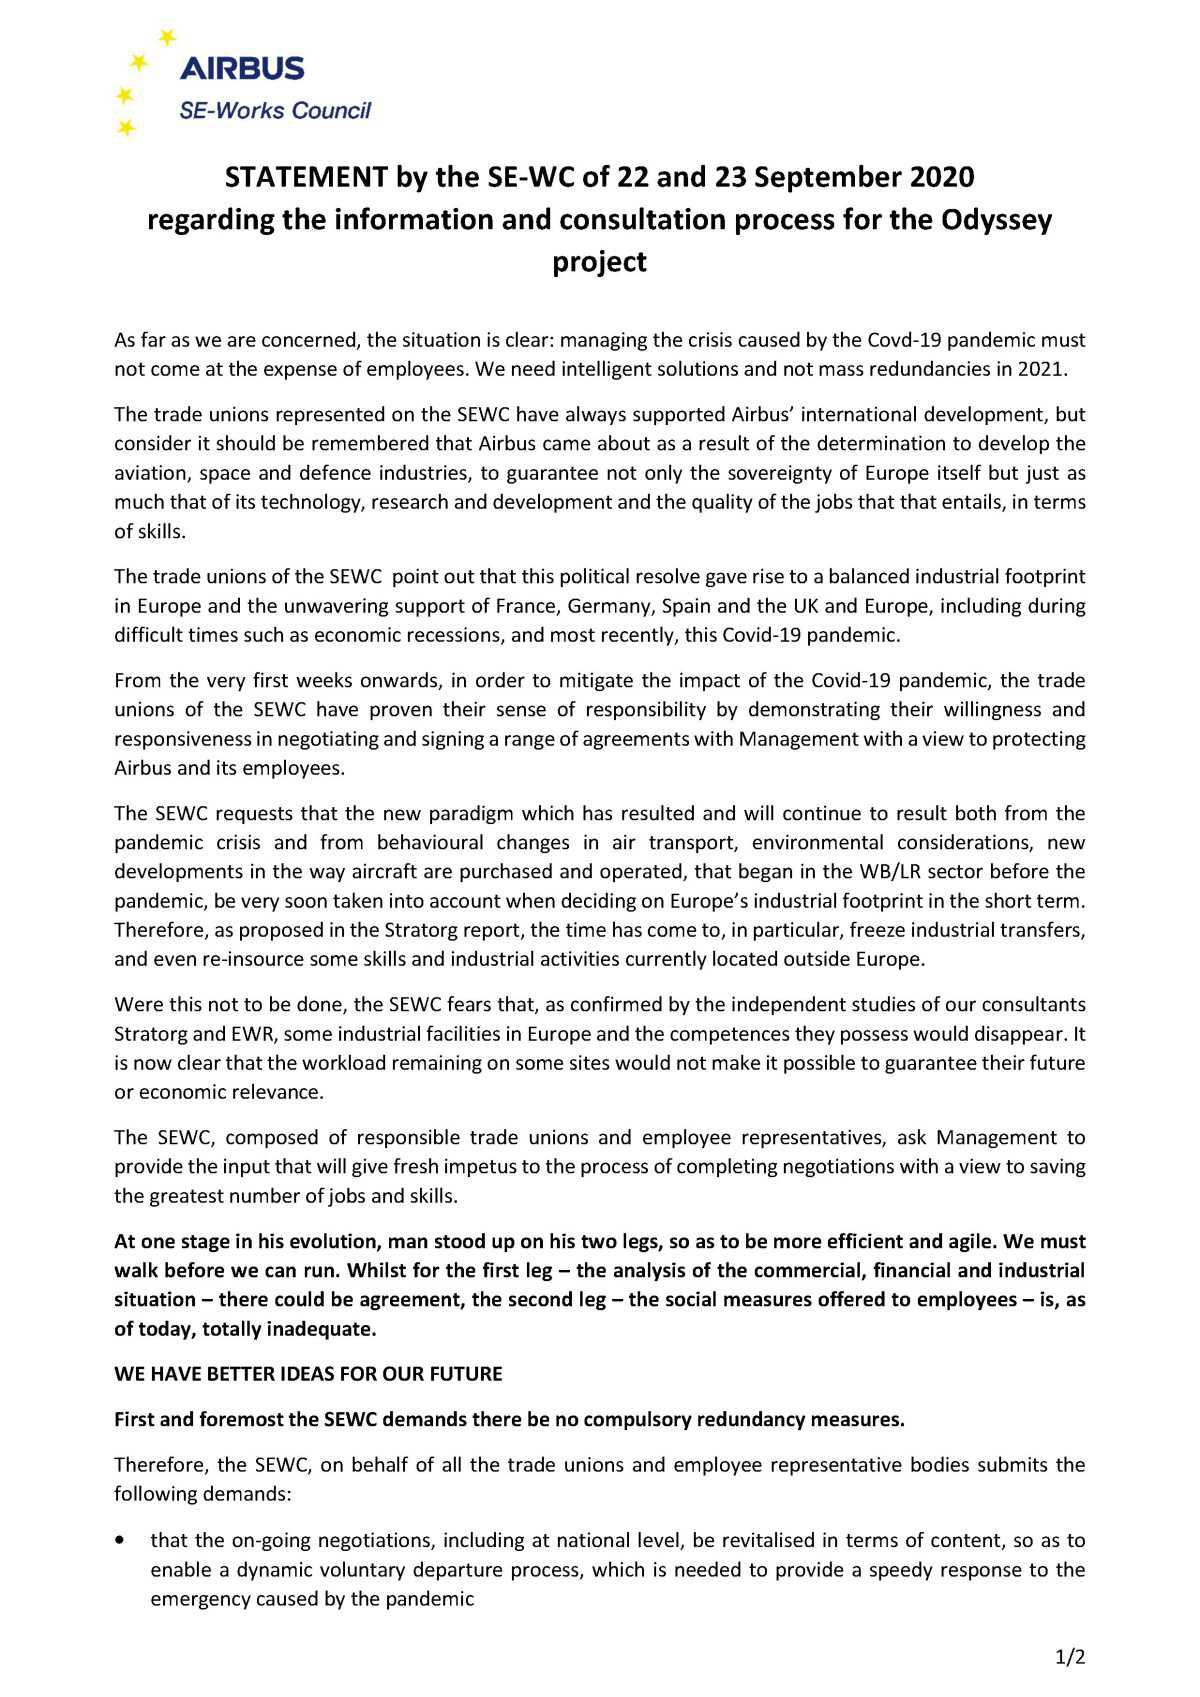 Déclaration du SE-WC des 22 et 23 Septembre 2020 concernant l'information / consultation du projet ODYSSEY